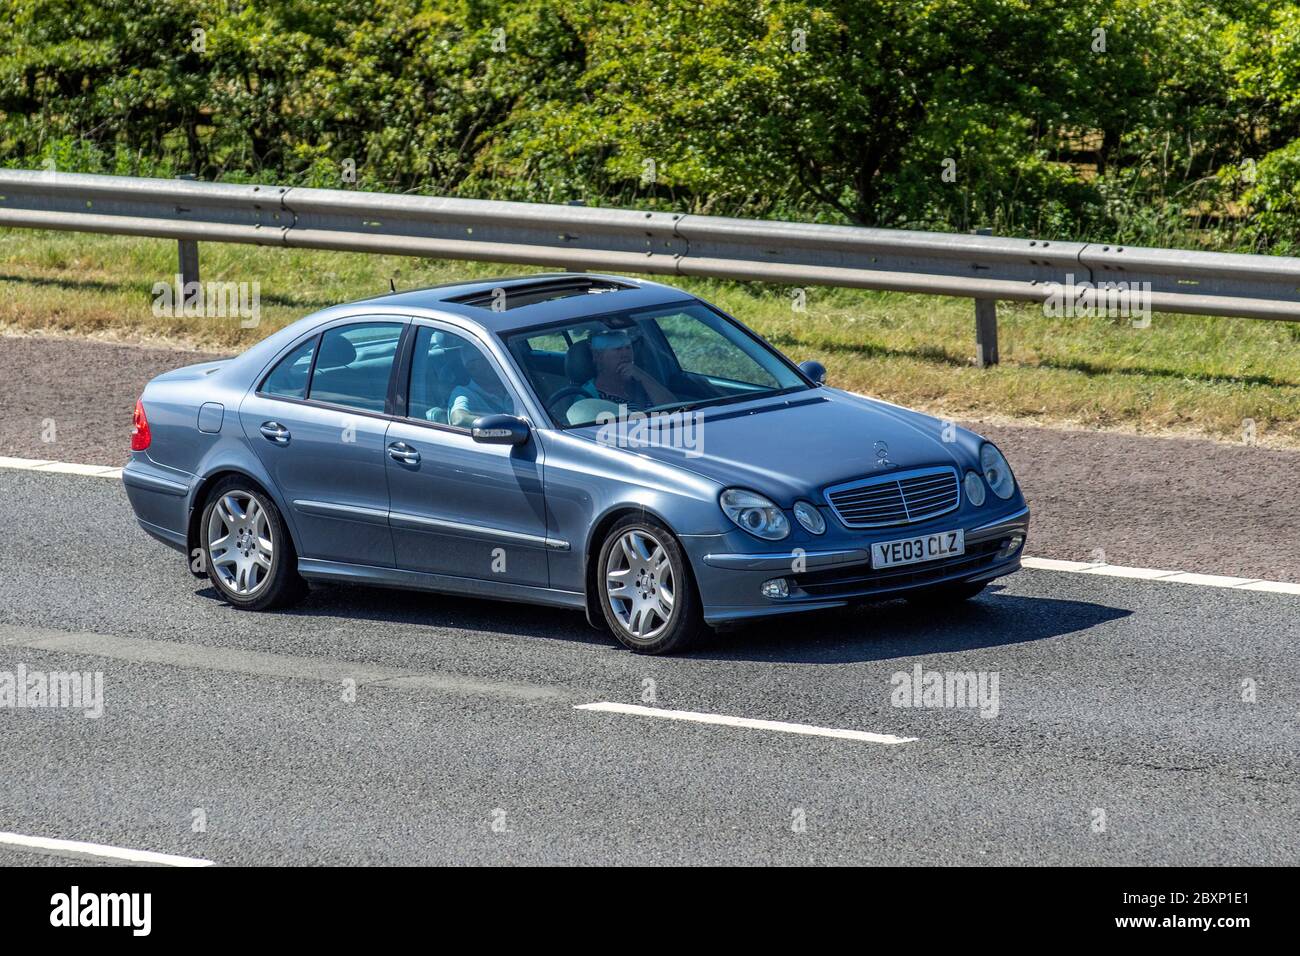 2003 blu Mercedes Benz e Classe E320 CDI Avantgarde S210 Auto Estate Diesel  automatico; traffico veicolare veicoli in movimento, automobili che guidano  veicolo su strade del Regno Unito, motori, motori sulla M6